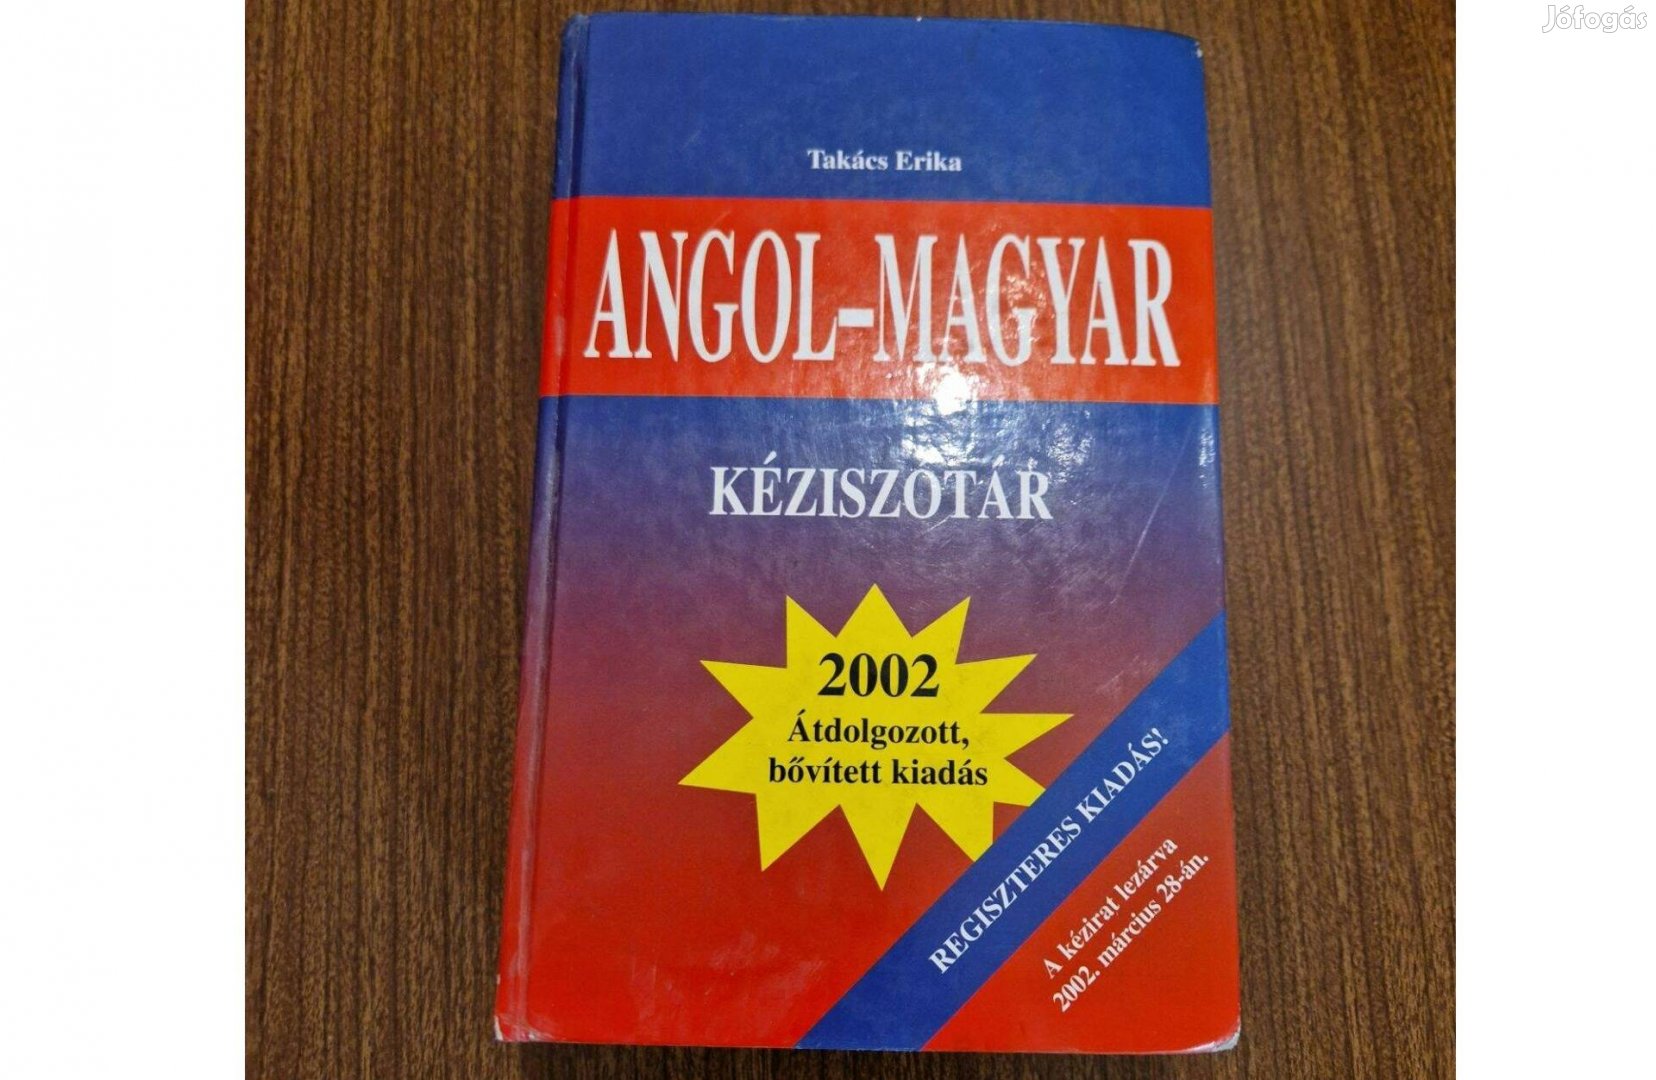 Takács Erika: Angol - Magyar kéziszótár (szótár)